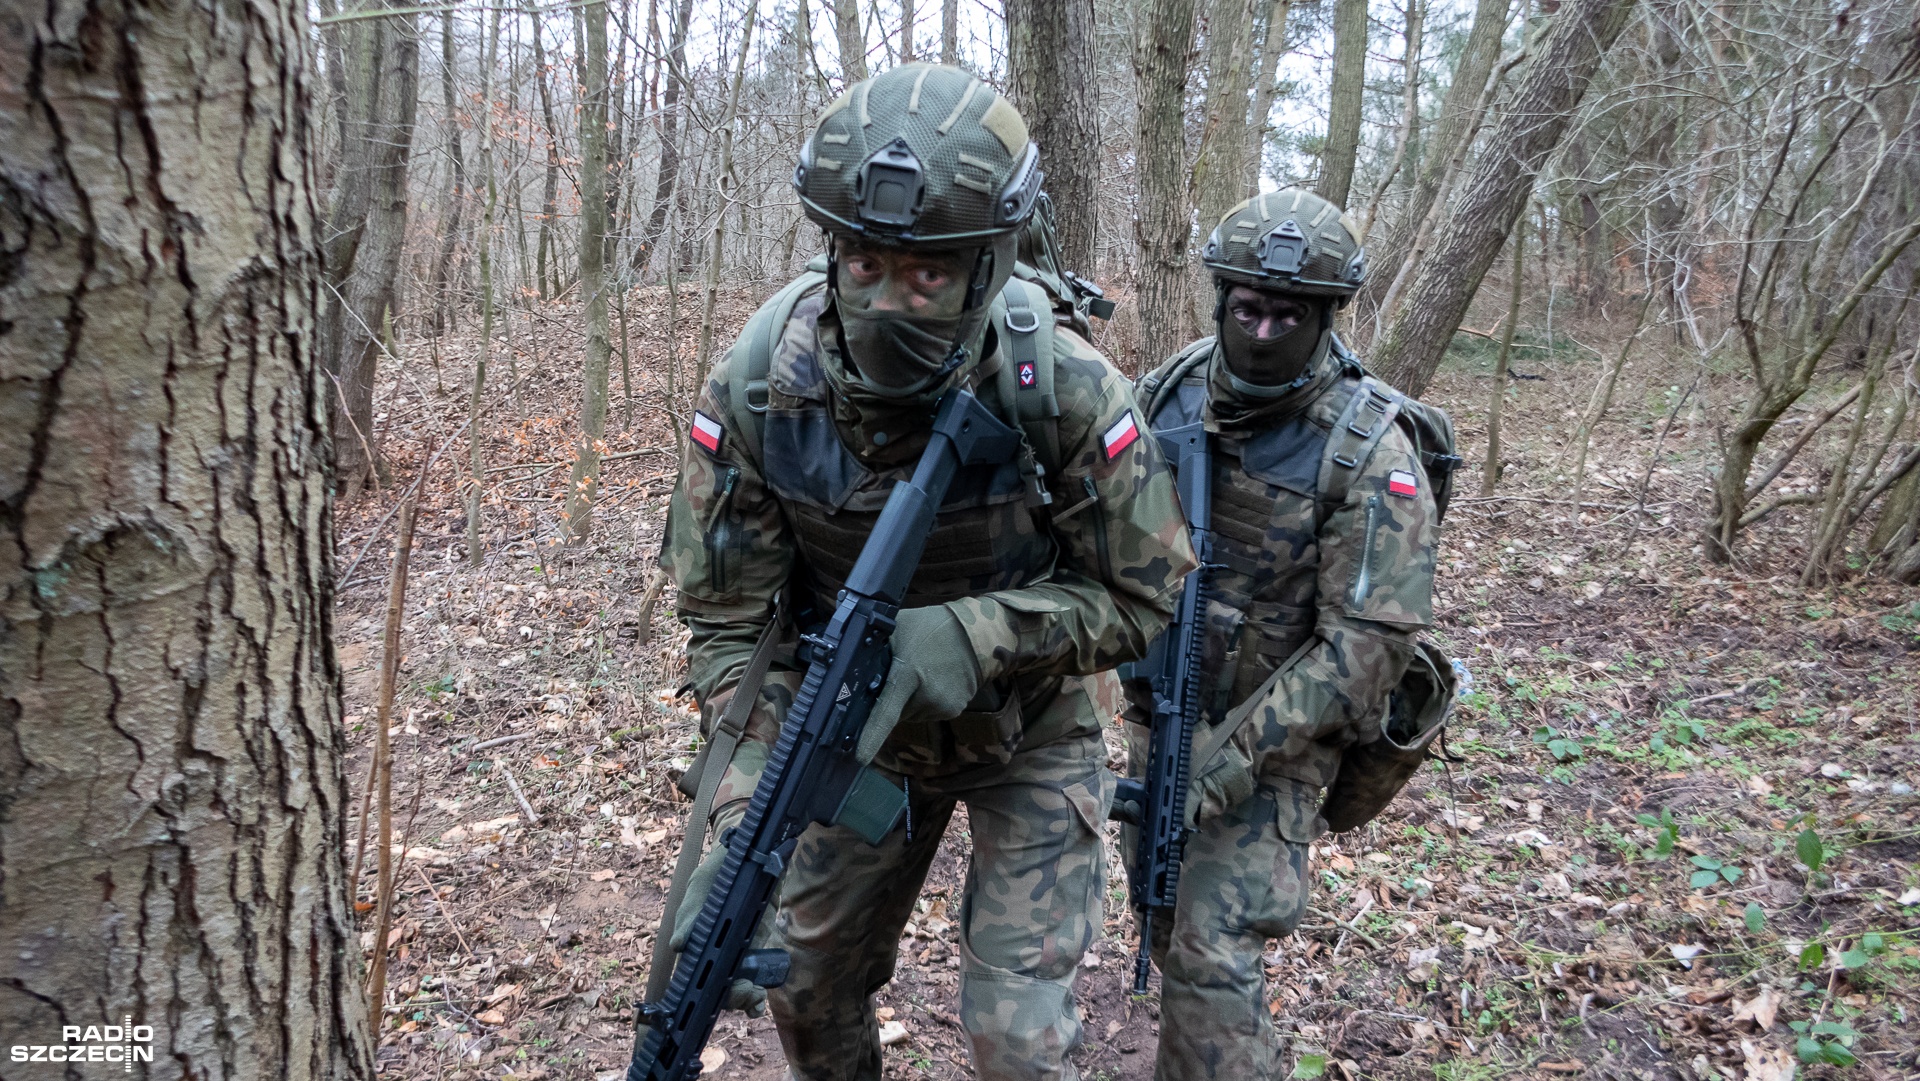 Żołnierze Wojsk Obrony Terytorialnej zakończyli szkolenie rozpoznawcze z oddziałami jednostek operacyjnych. Zajęcia w ramach zimowego poligonu zorganizowano na terenie Kotliny Kłodzkiej.